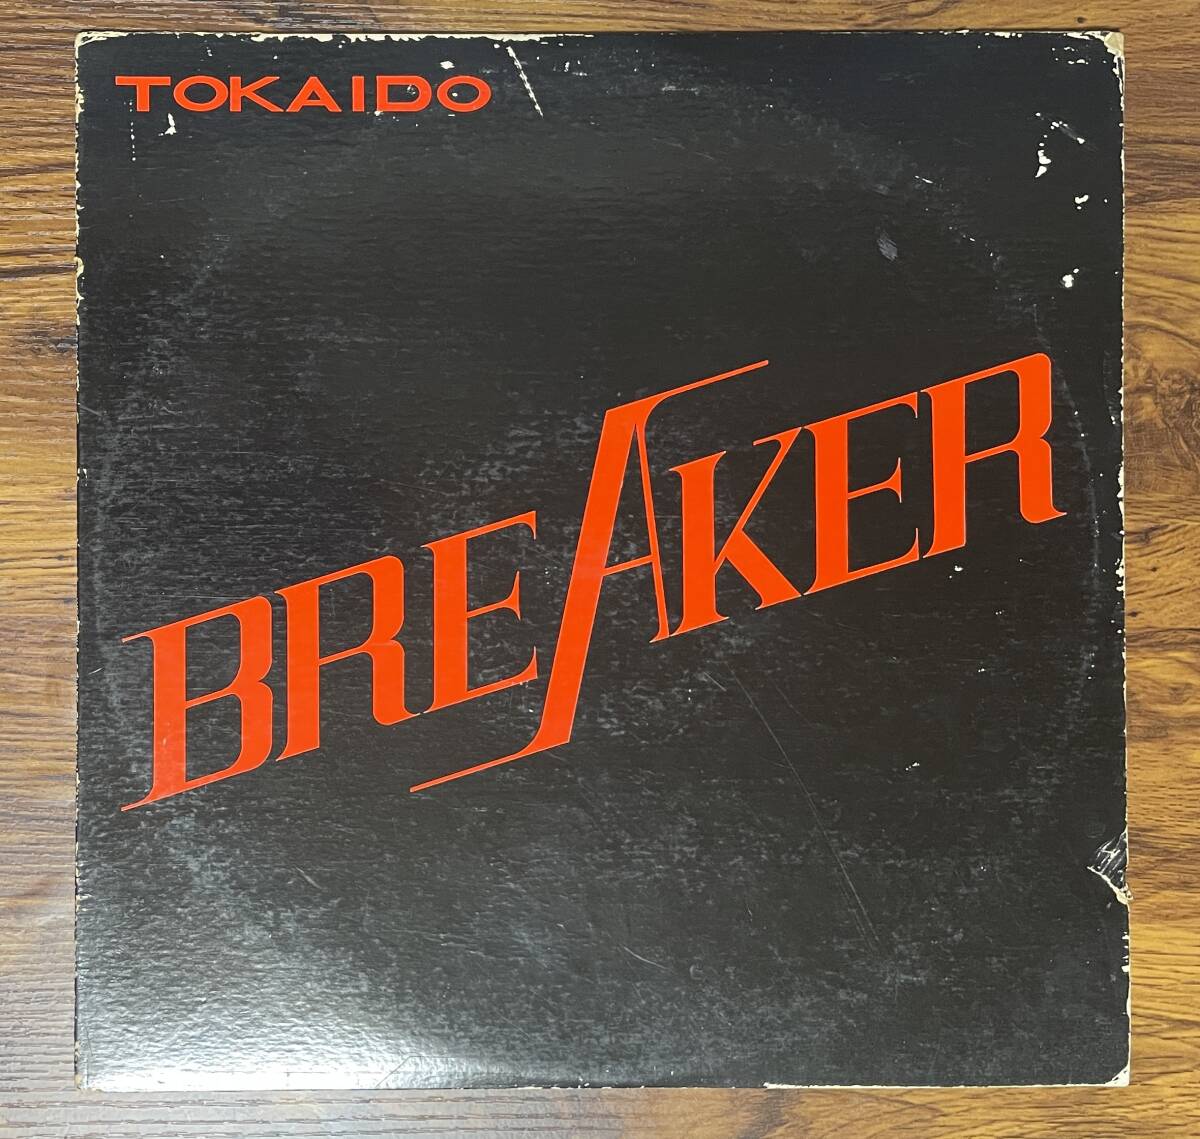 ブレイカー / 東海道 LP 激レア 自主盤 和モノ_画像1